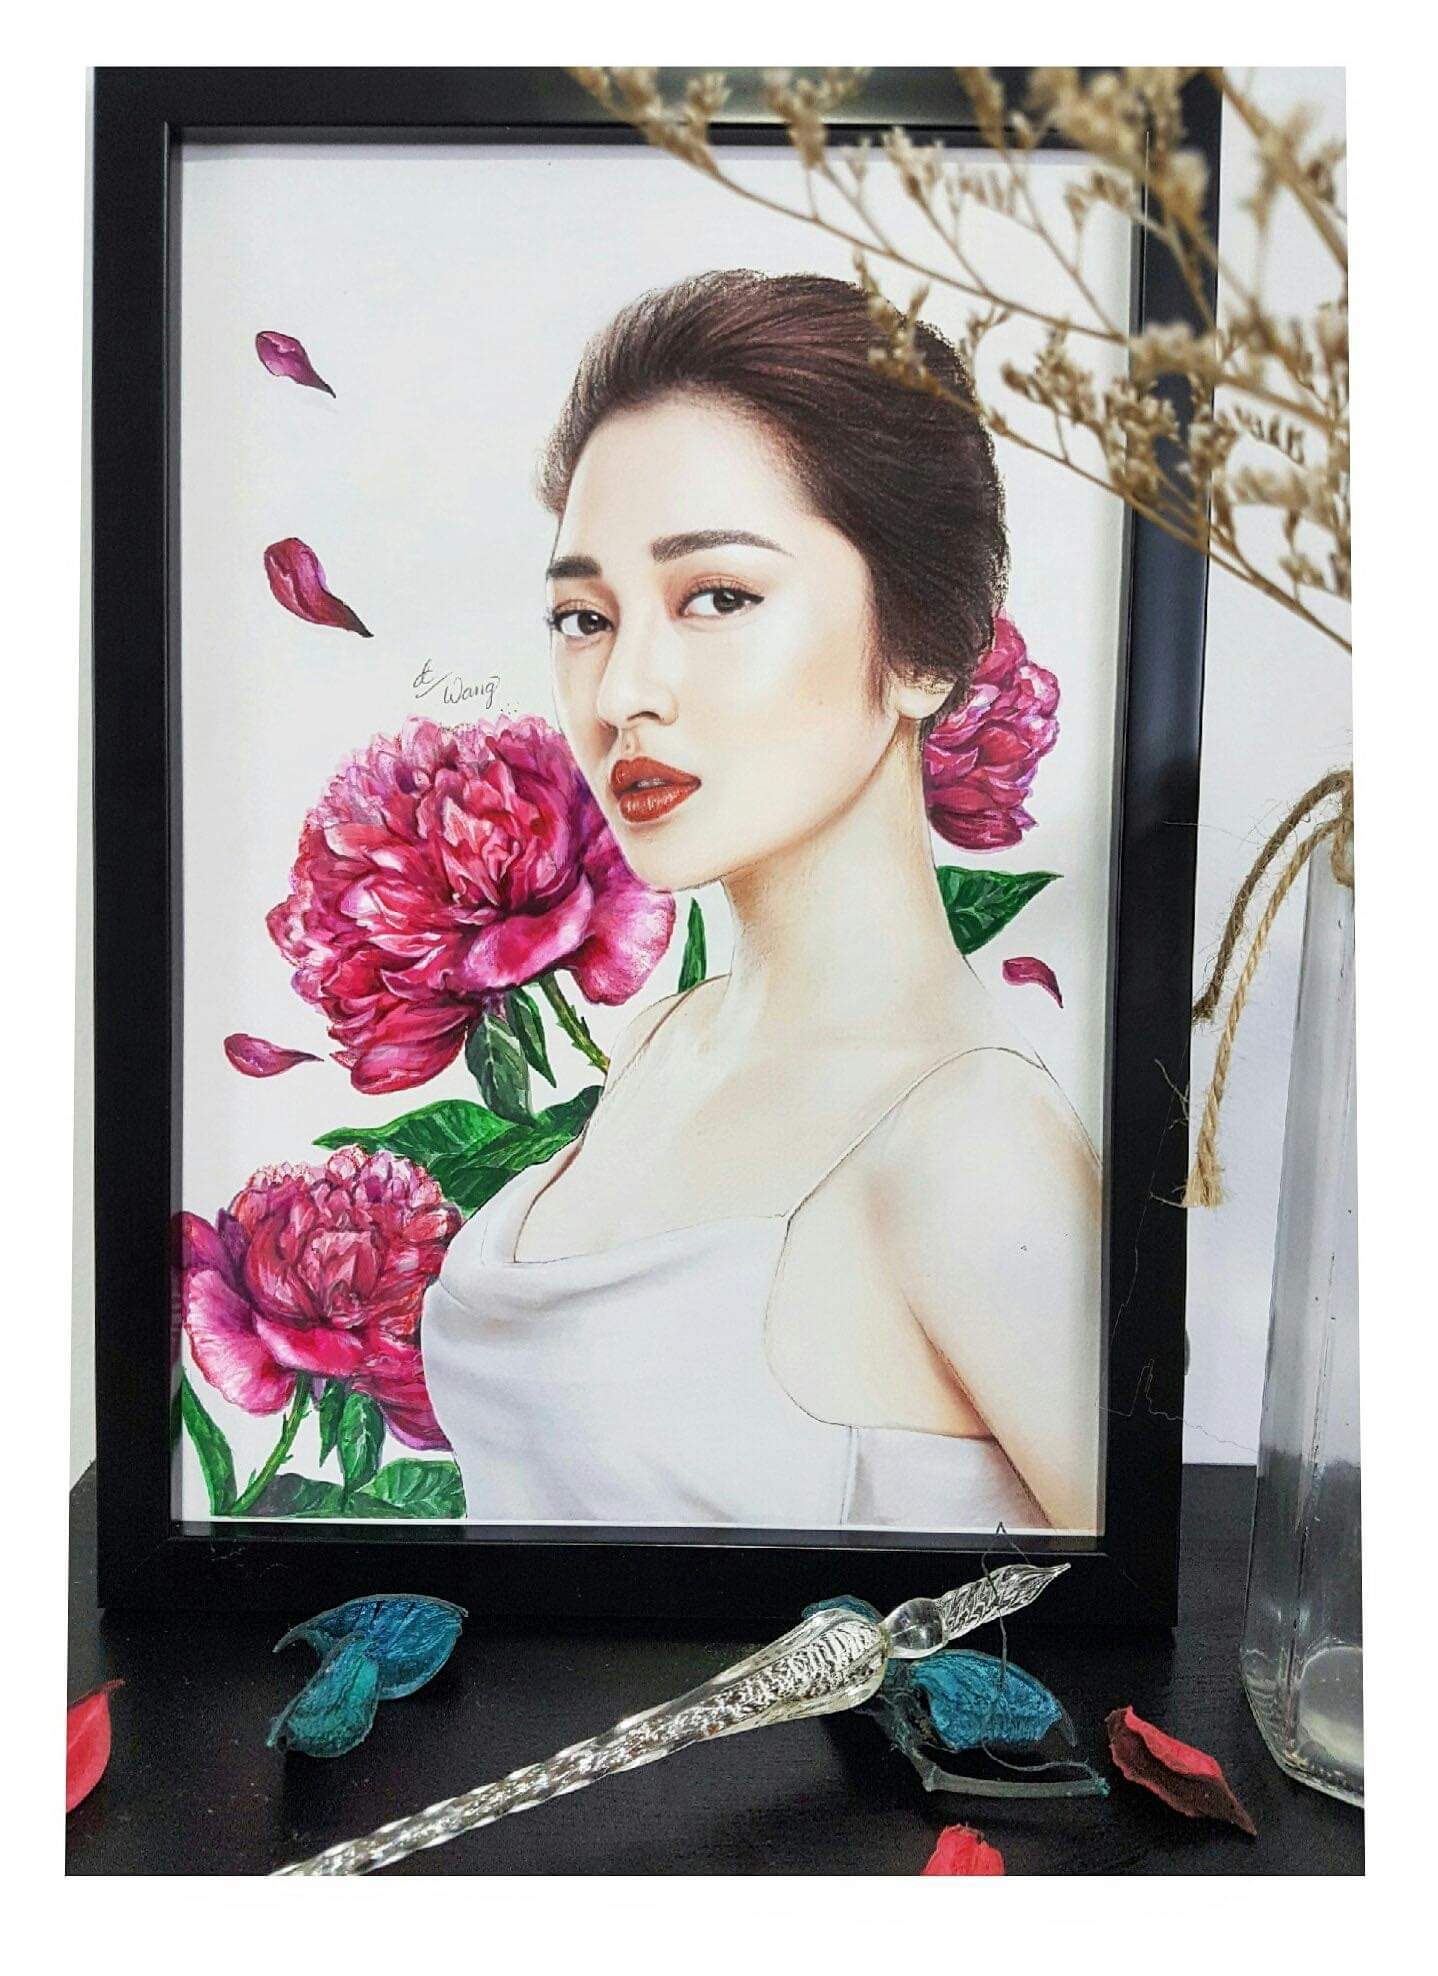 Nếu bạn yêu thích thời trang và những bộ cánh ấn tượng thì hãy xem hình ảnh của Ngọc Trinh, một trong những người mẫu nổi tiếng nhất ở Việt Nam. Bạn sẽ cảm thấy hài lòng với những bức ảnh đầy màu sắc và phong cách của cô ấy.